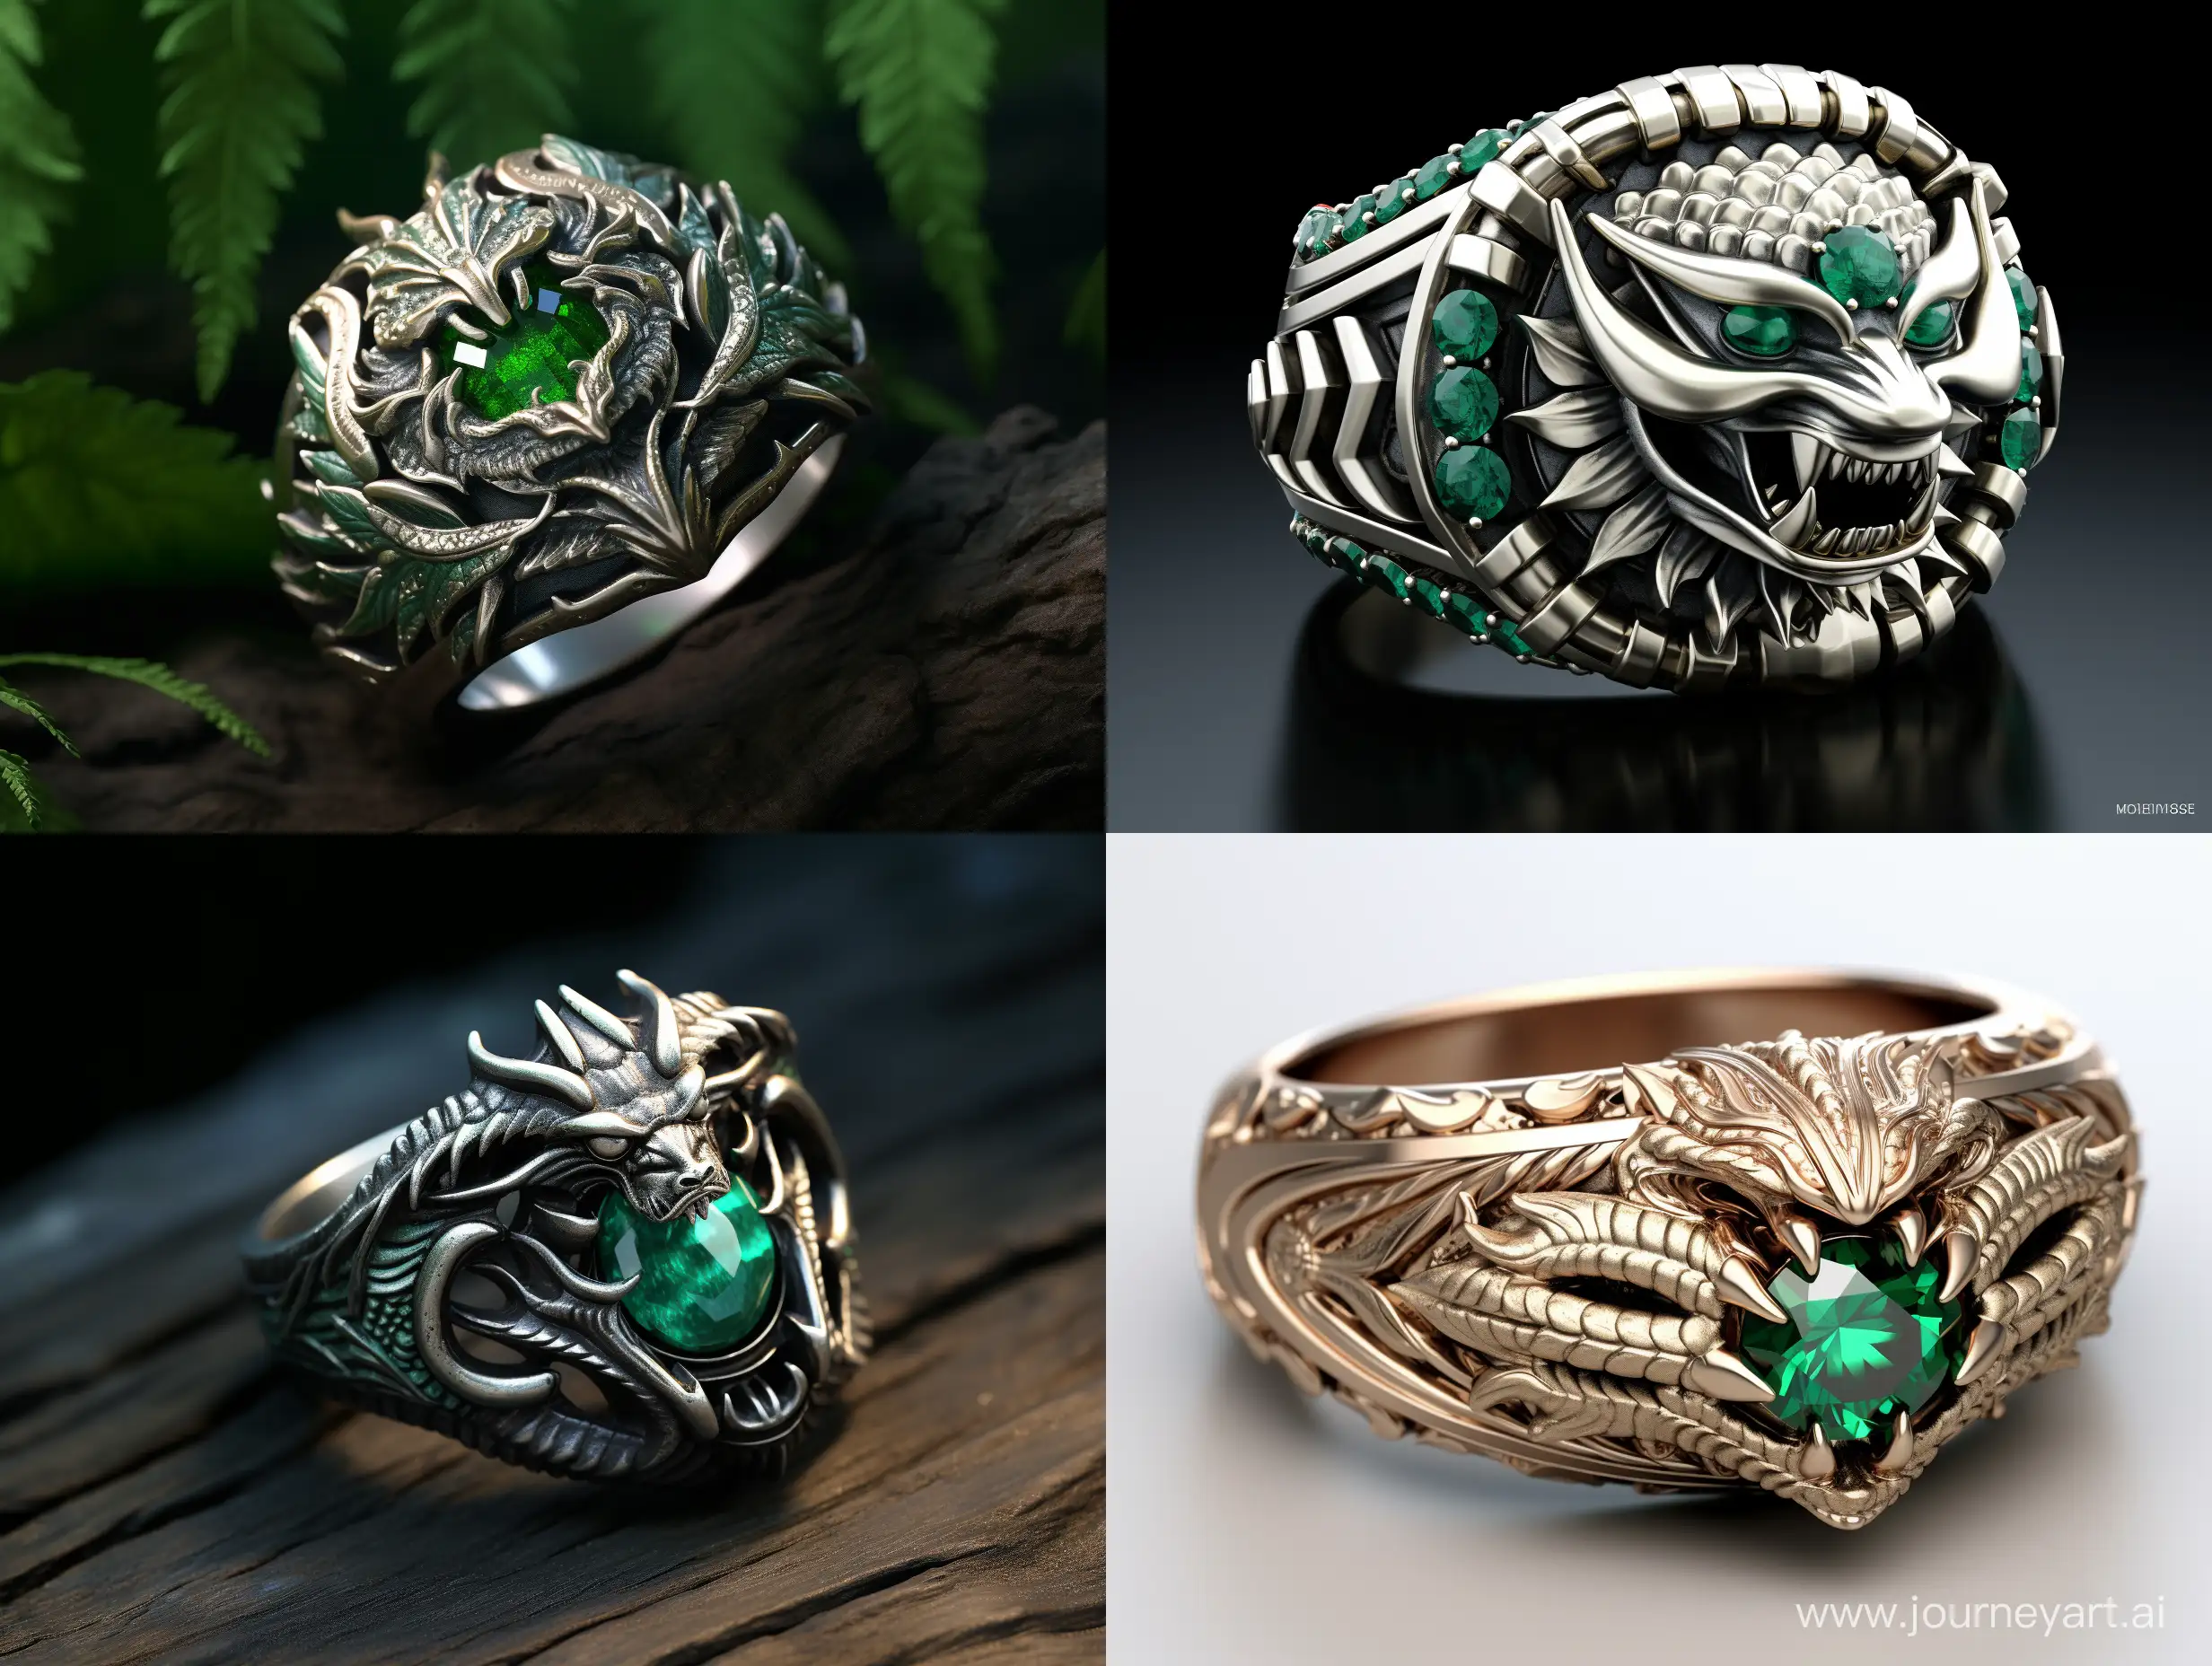 Зелёный дракон кольцо в центре которого расположен логотип фирмы Adidas ORIGINALS, стиль фентези

